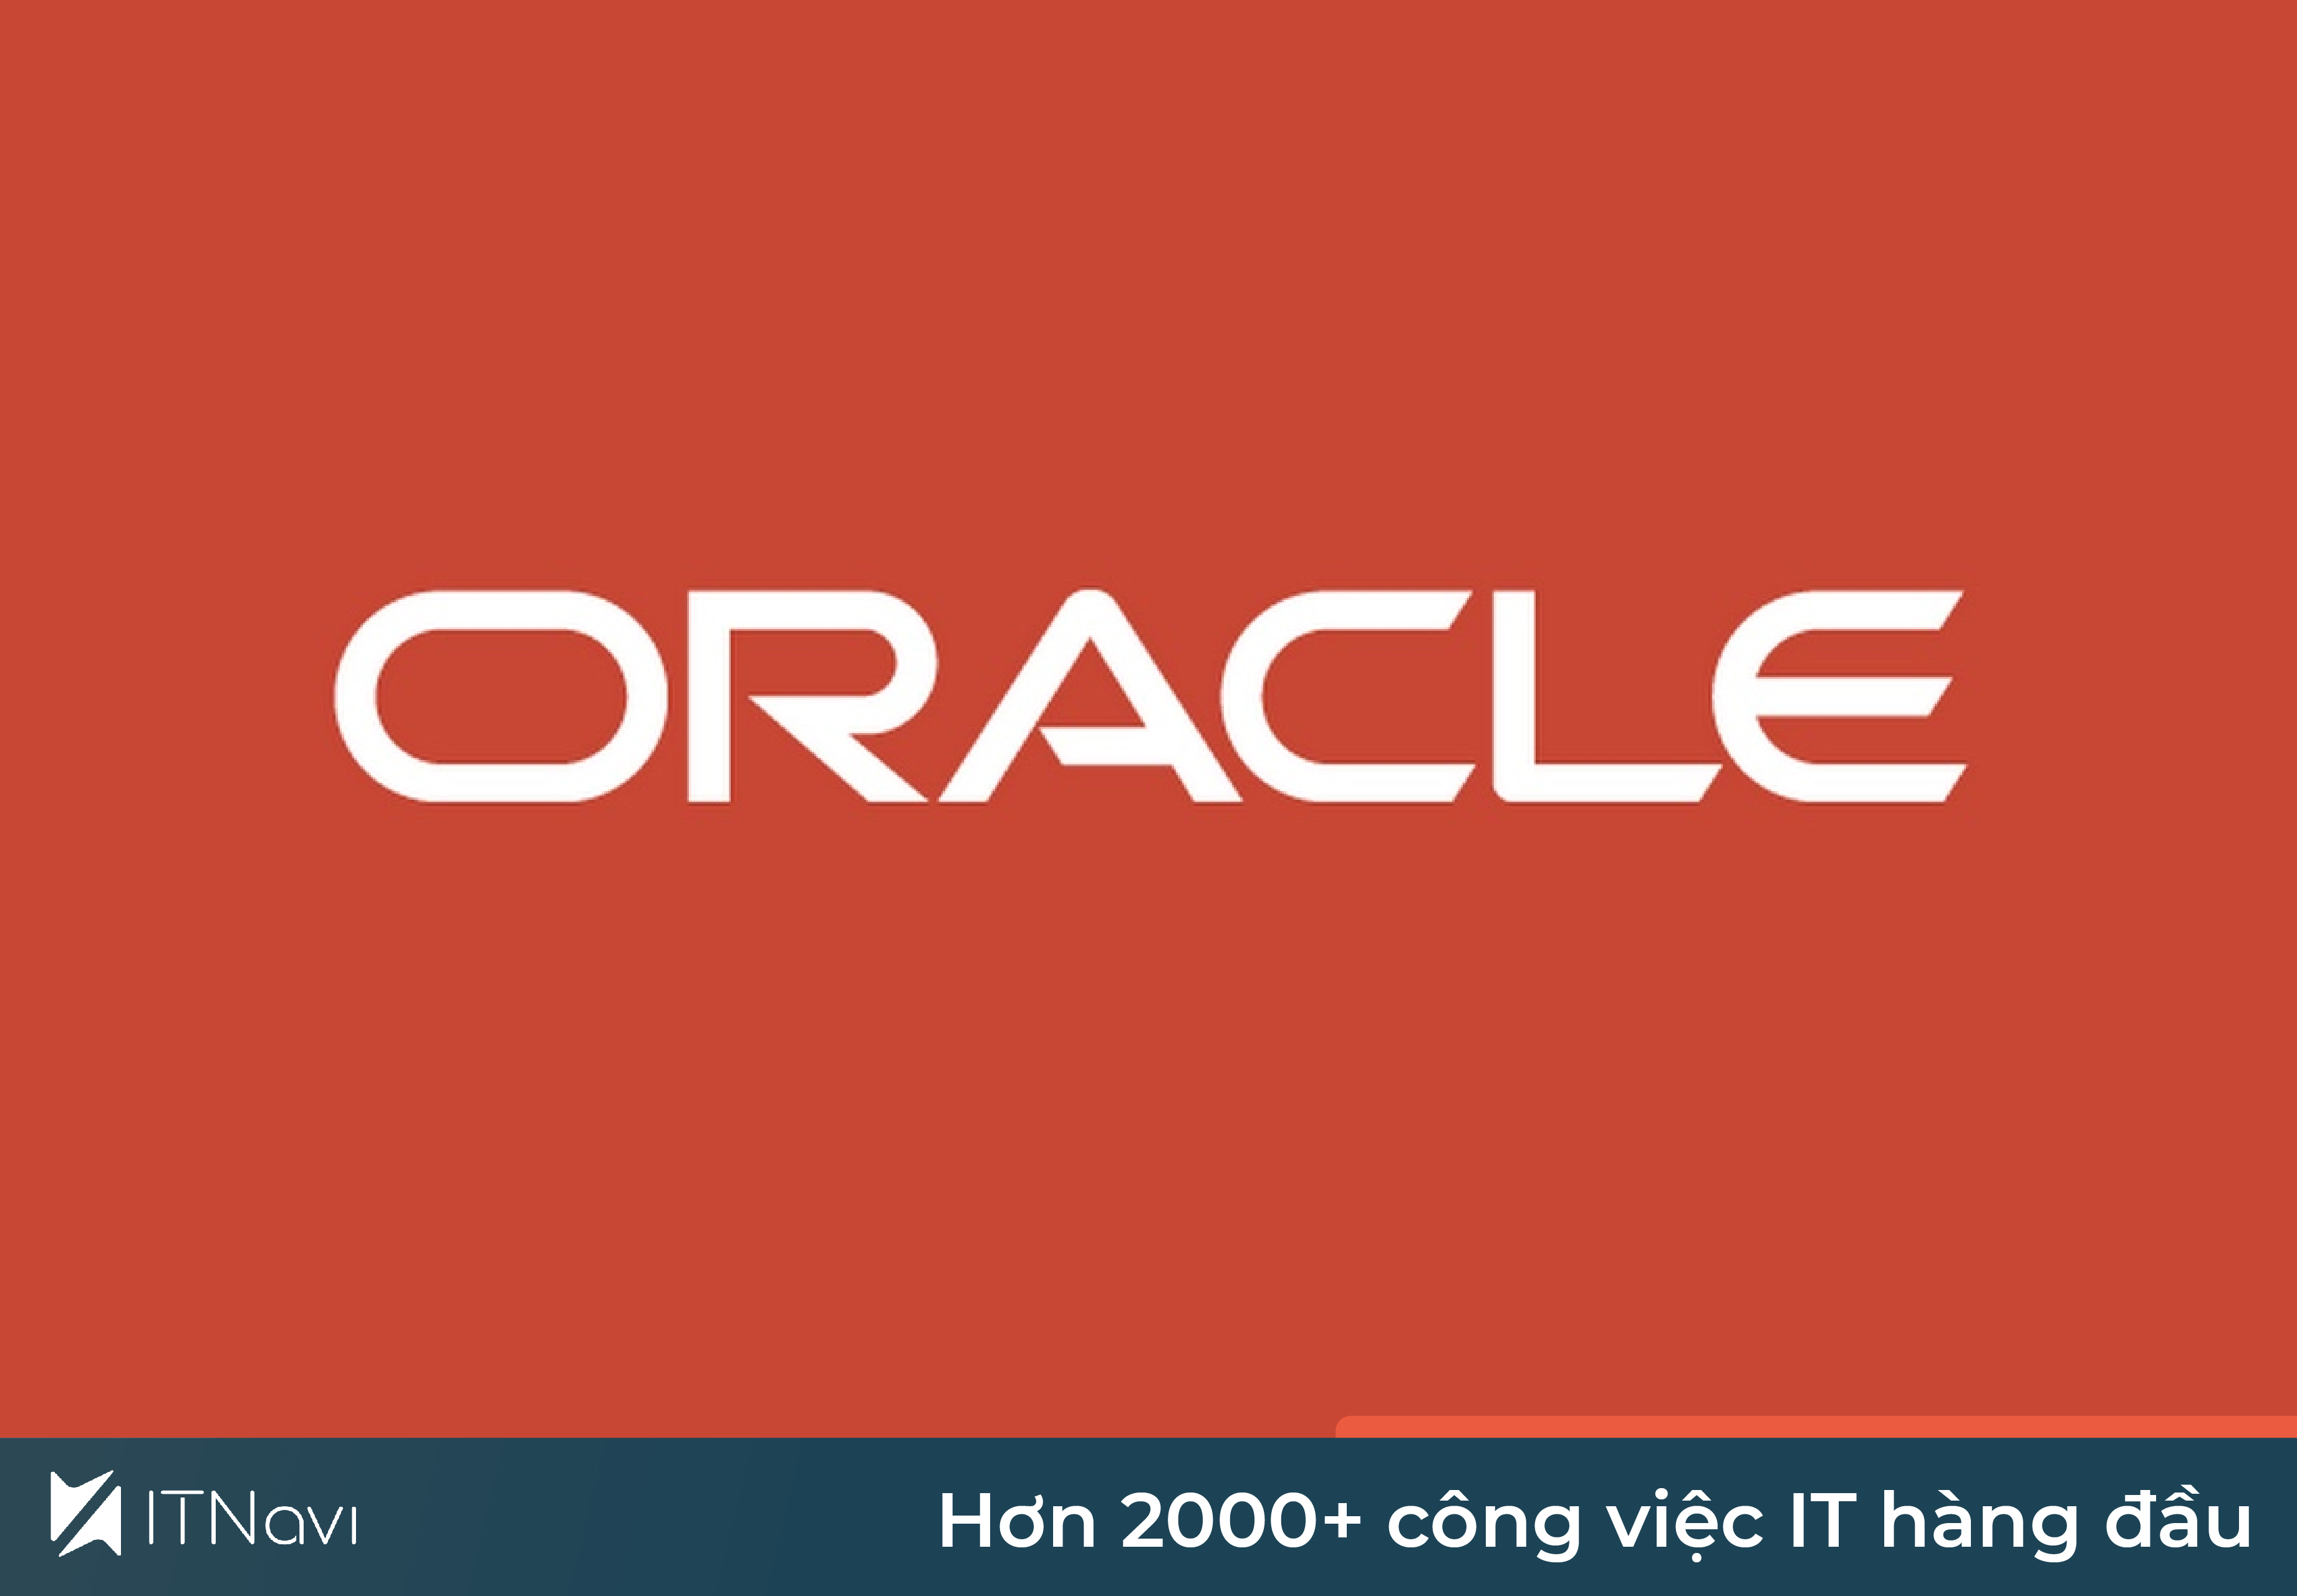 Oracle là gì? Mọi điều cần biết về cơ sở dữ liệu số 1 Thế Giới